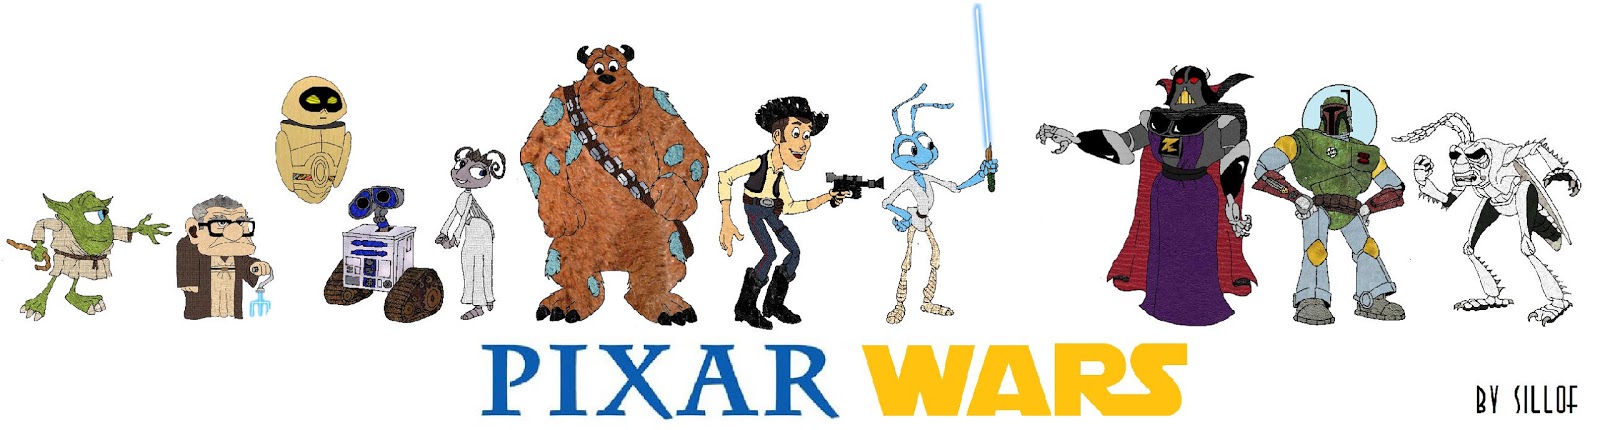 Pixar+Wars.jpg